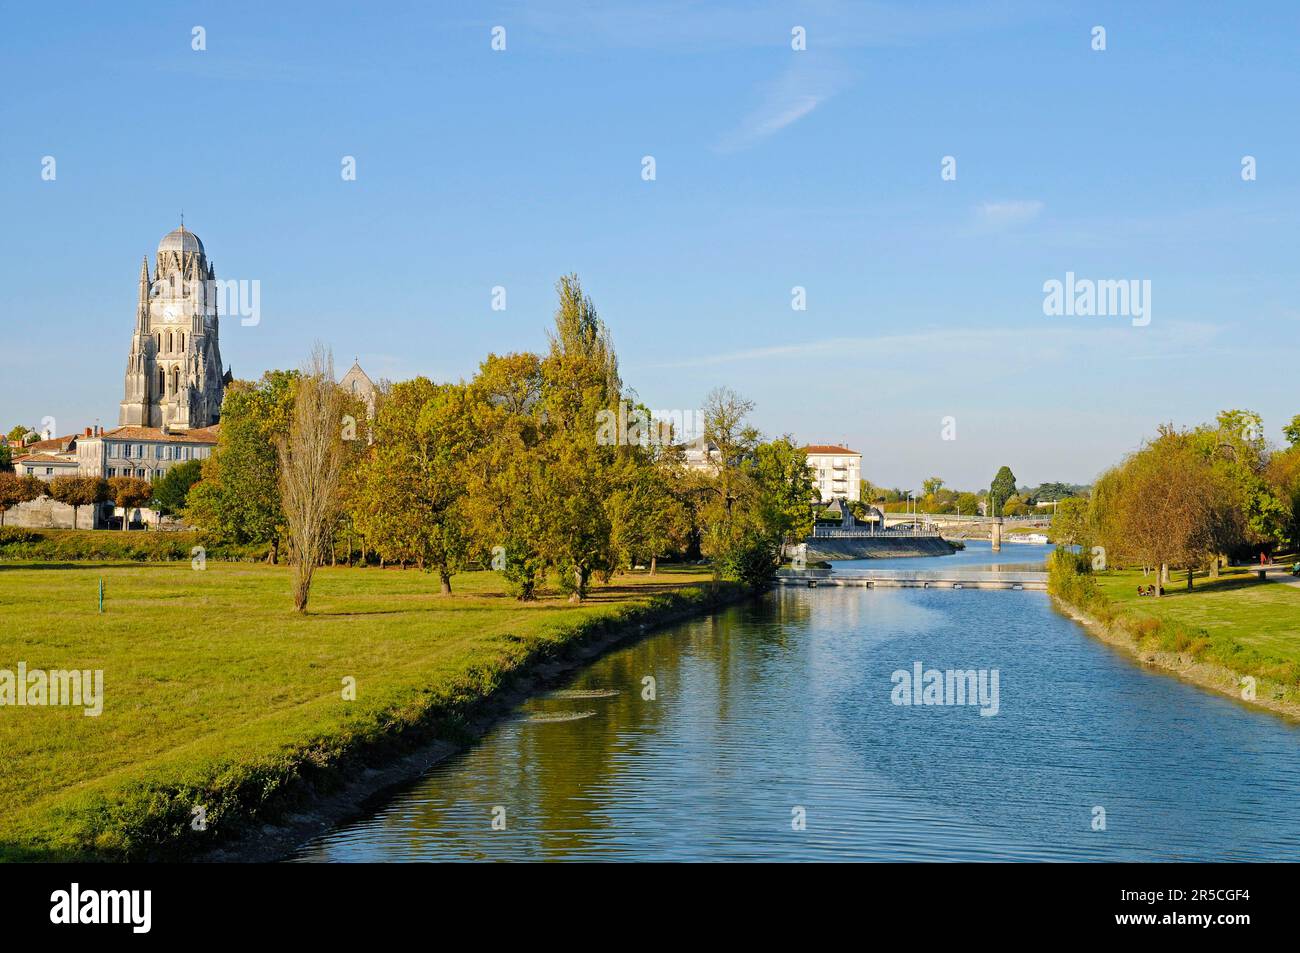 Saint-Pierre Cathedral, Charente River, Saintes, Charente-Maritime Department, Poitou-Charentes, France Stock Photo